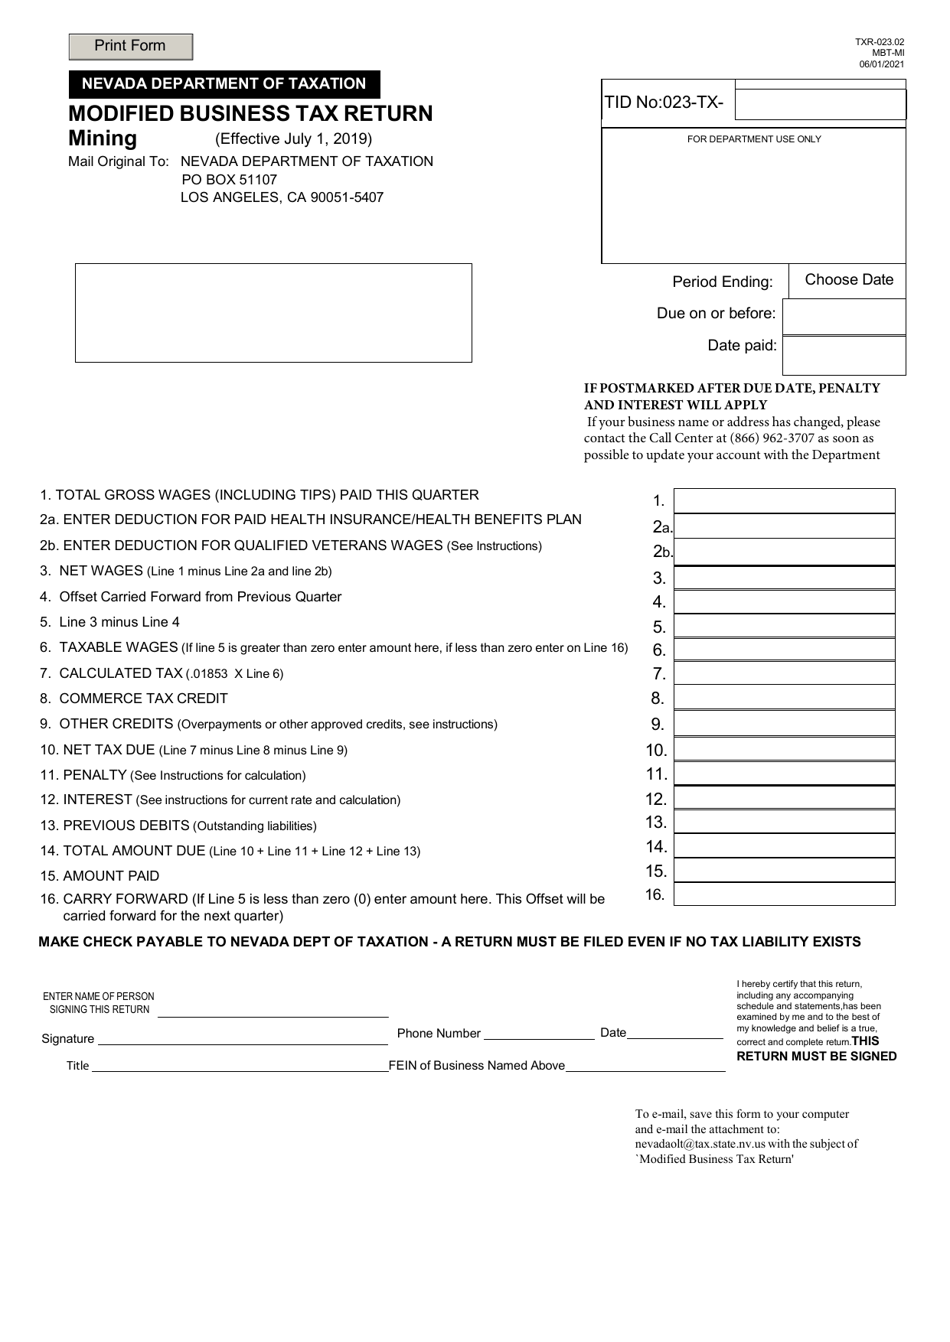 Form TXR-023.02 Modified Business Tax Return - Mining - Nevada, Page 1